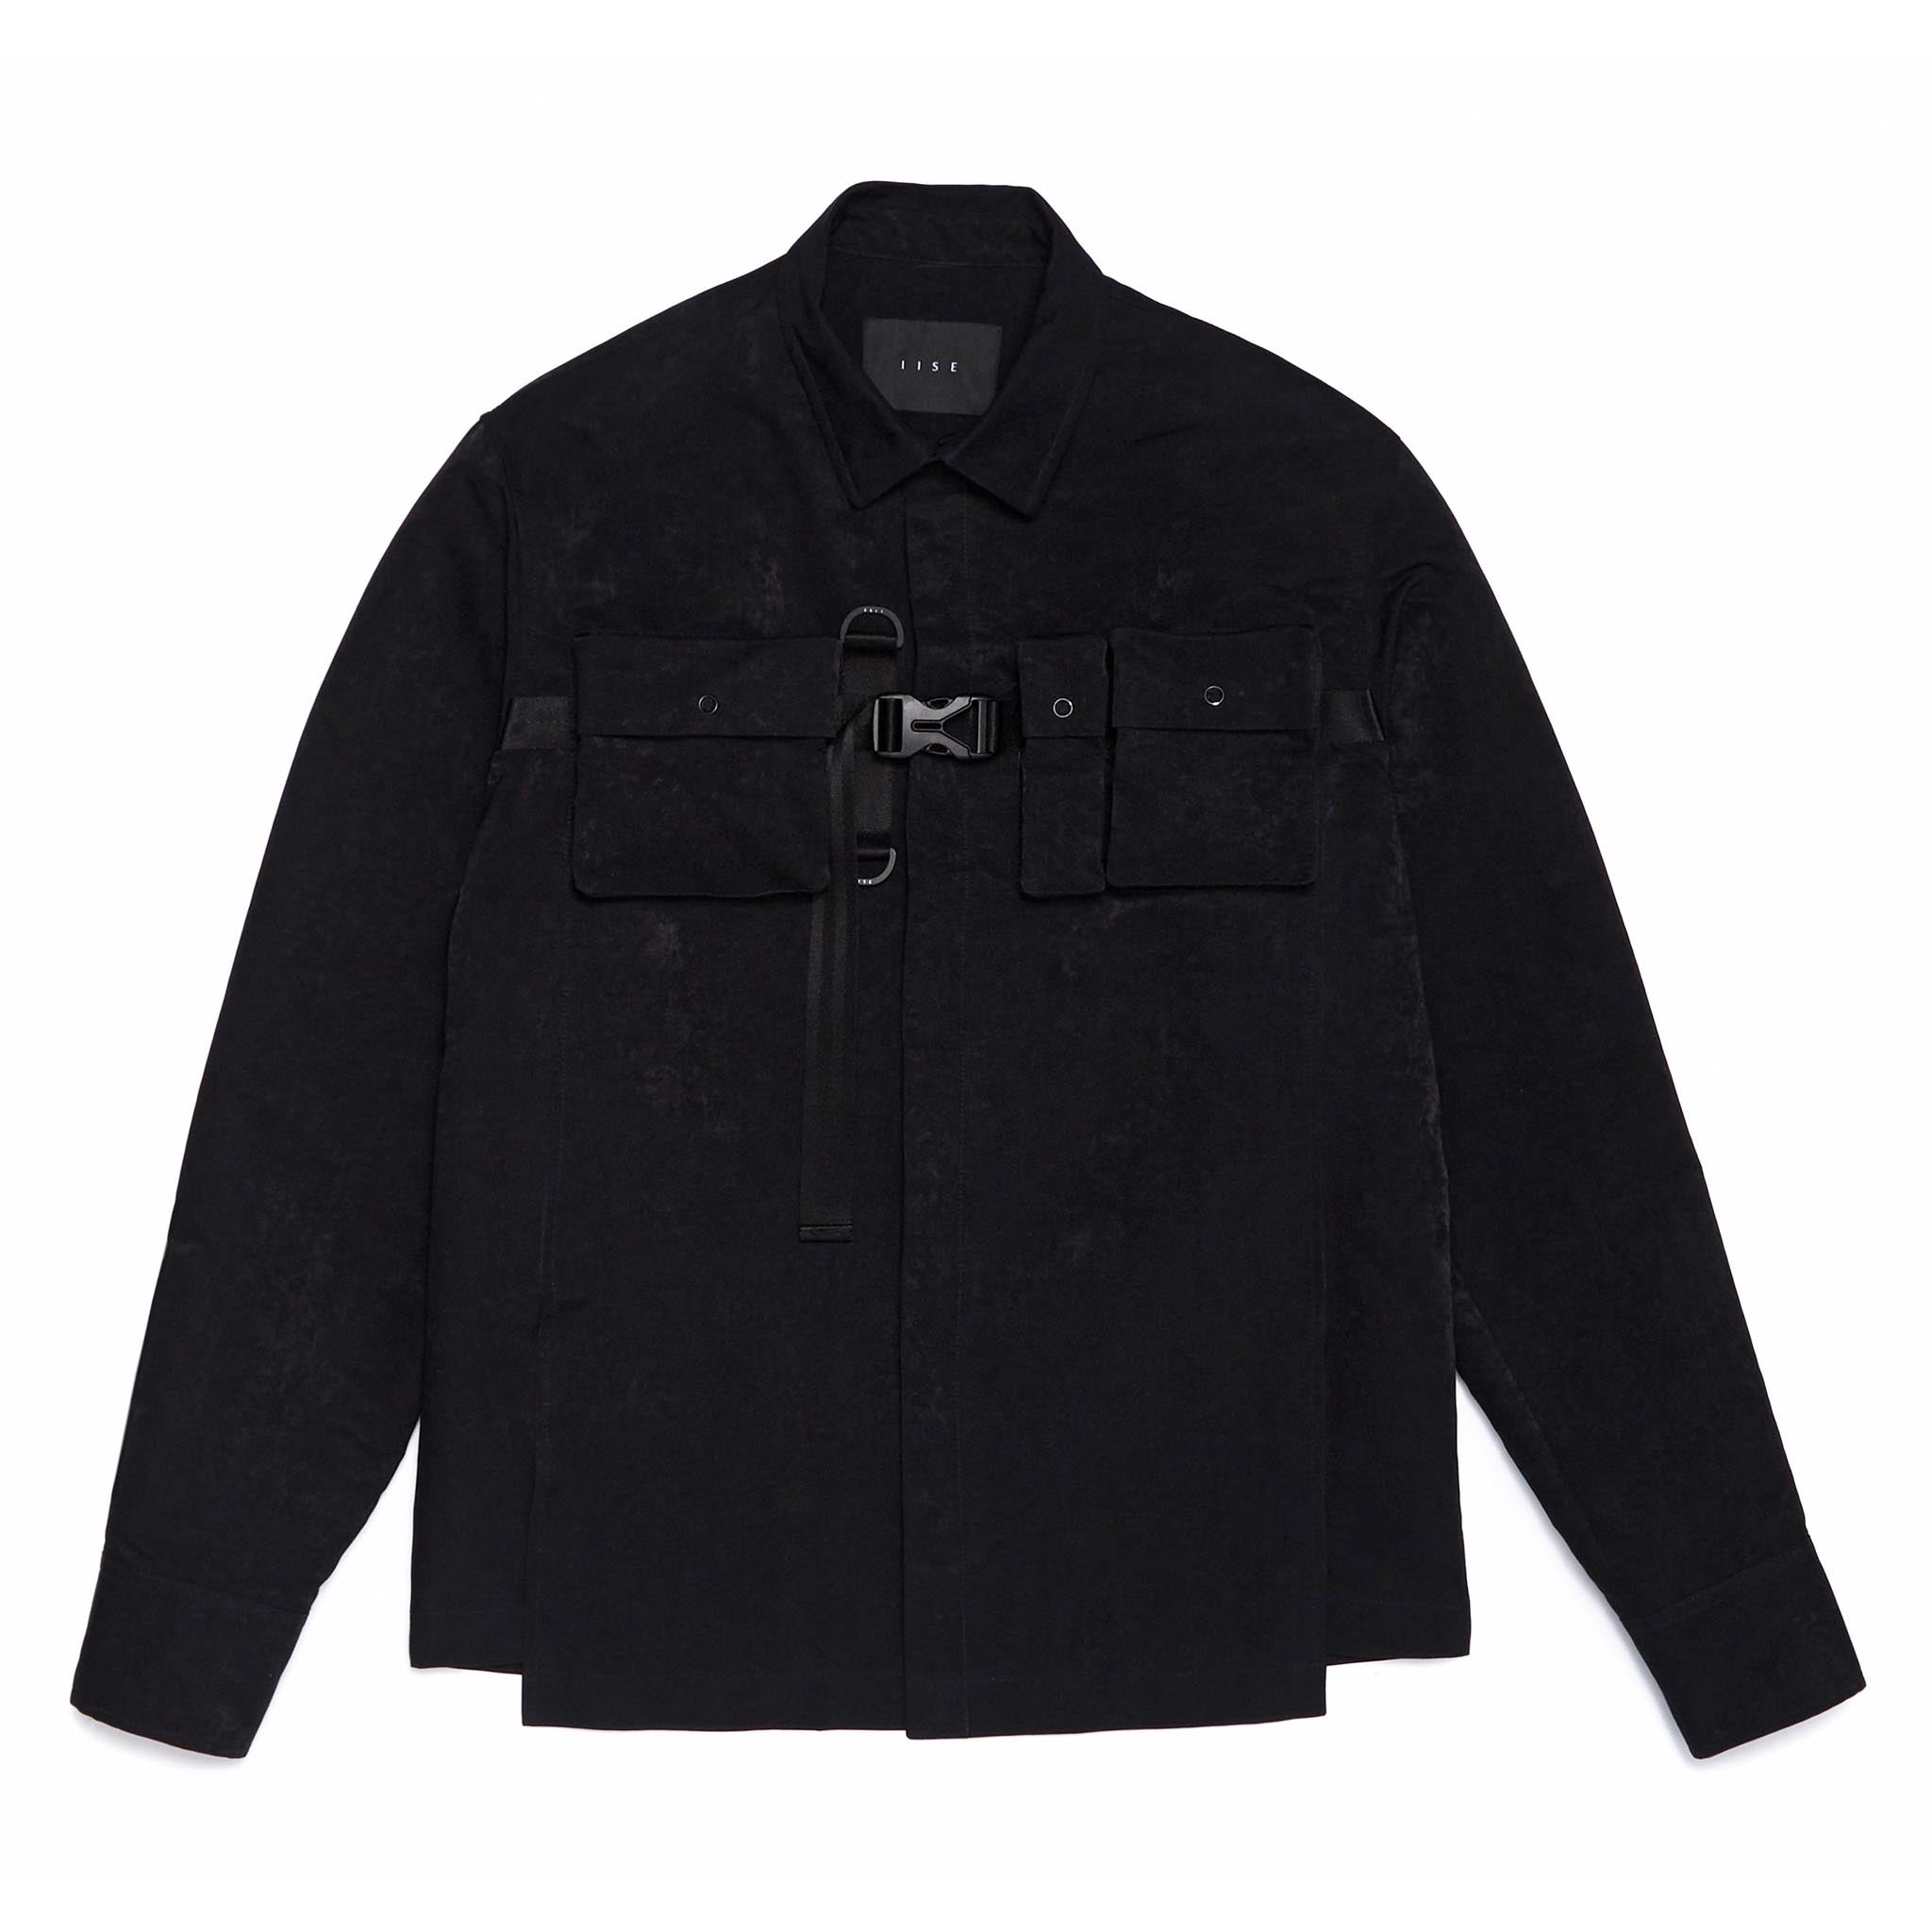 IISE Utility Long Sleeve Overshirt Black